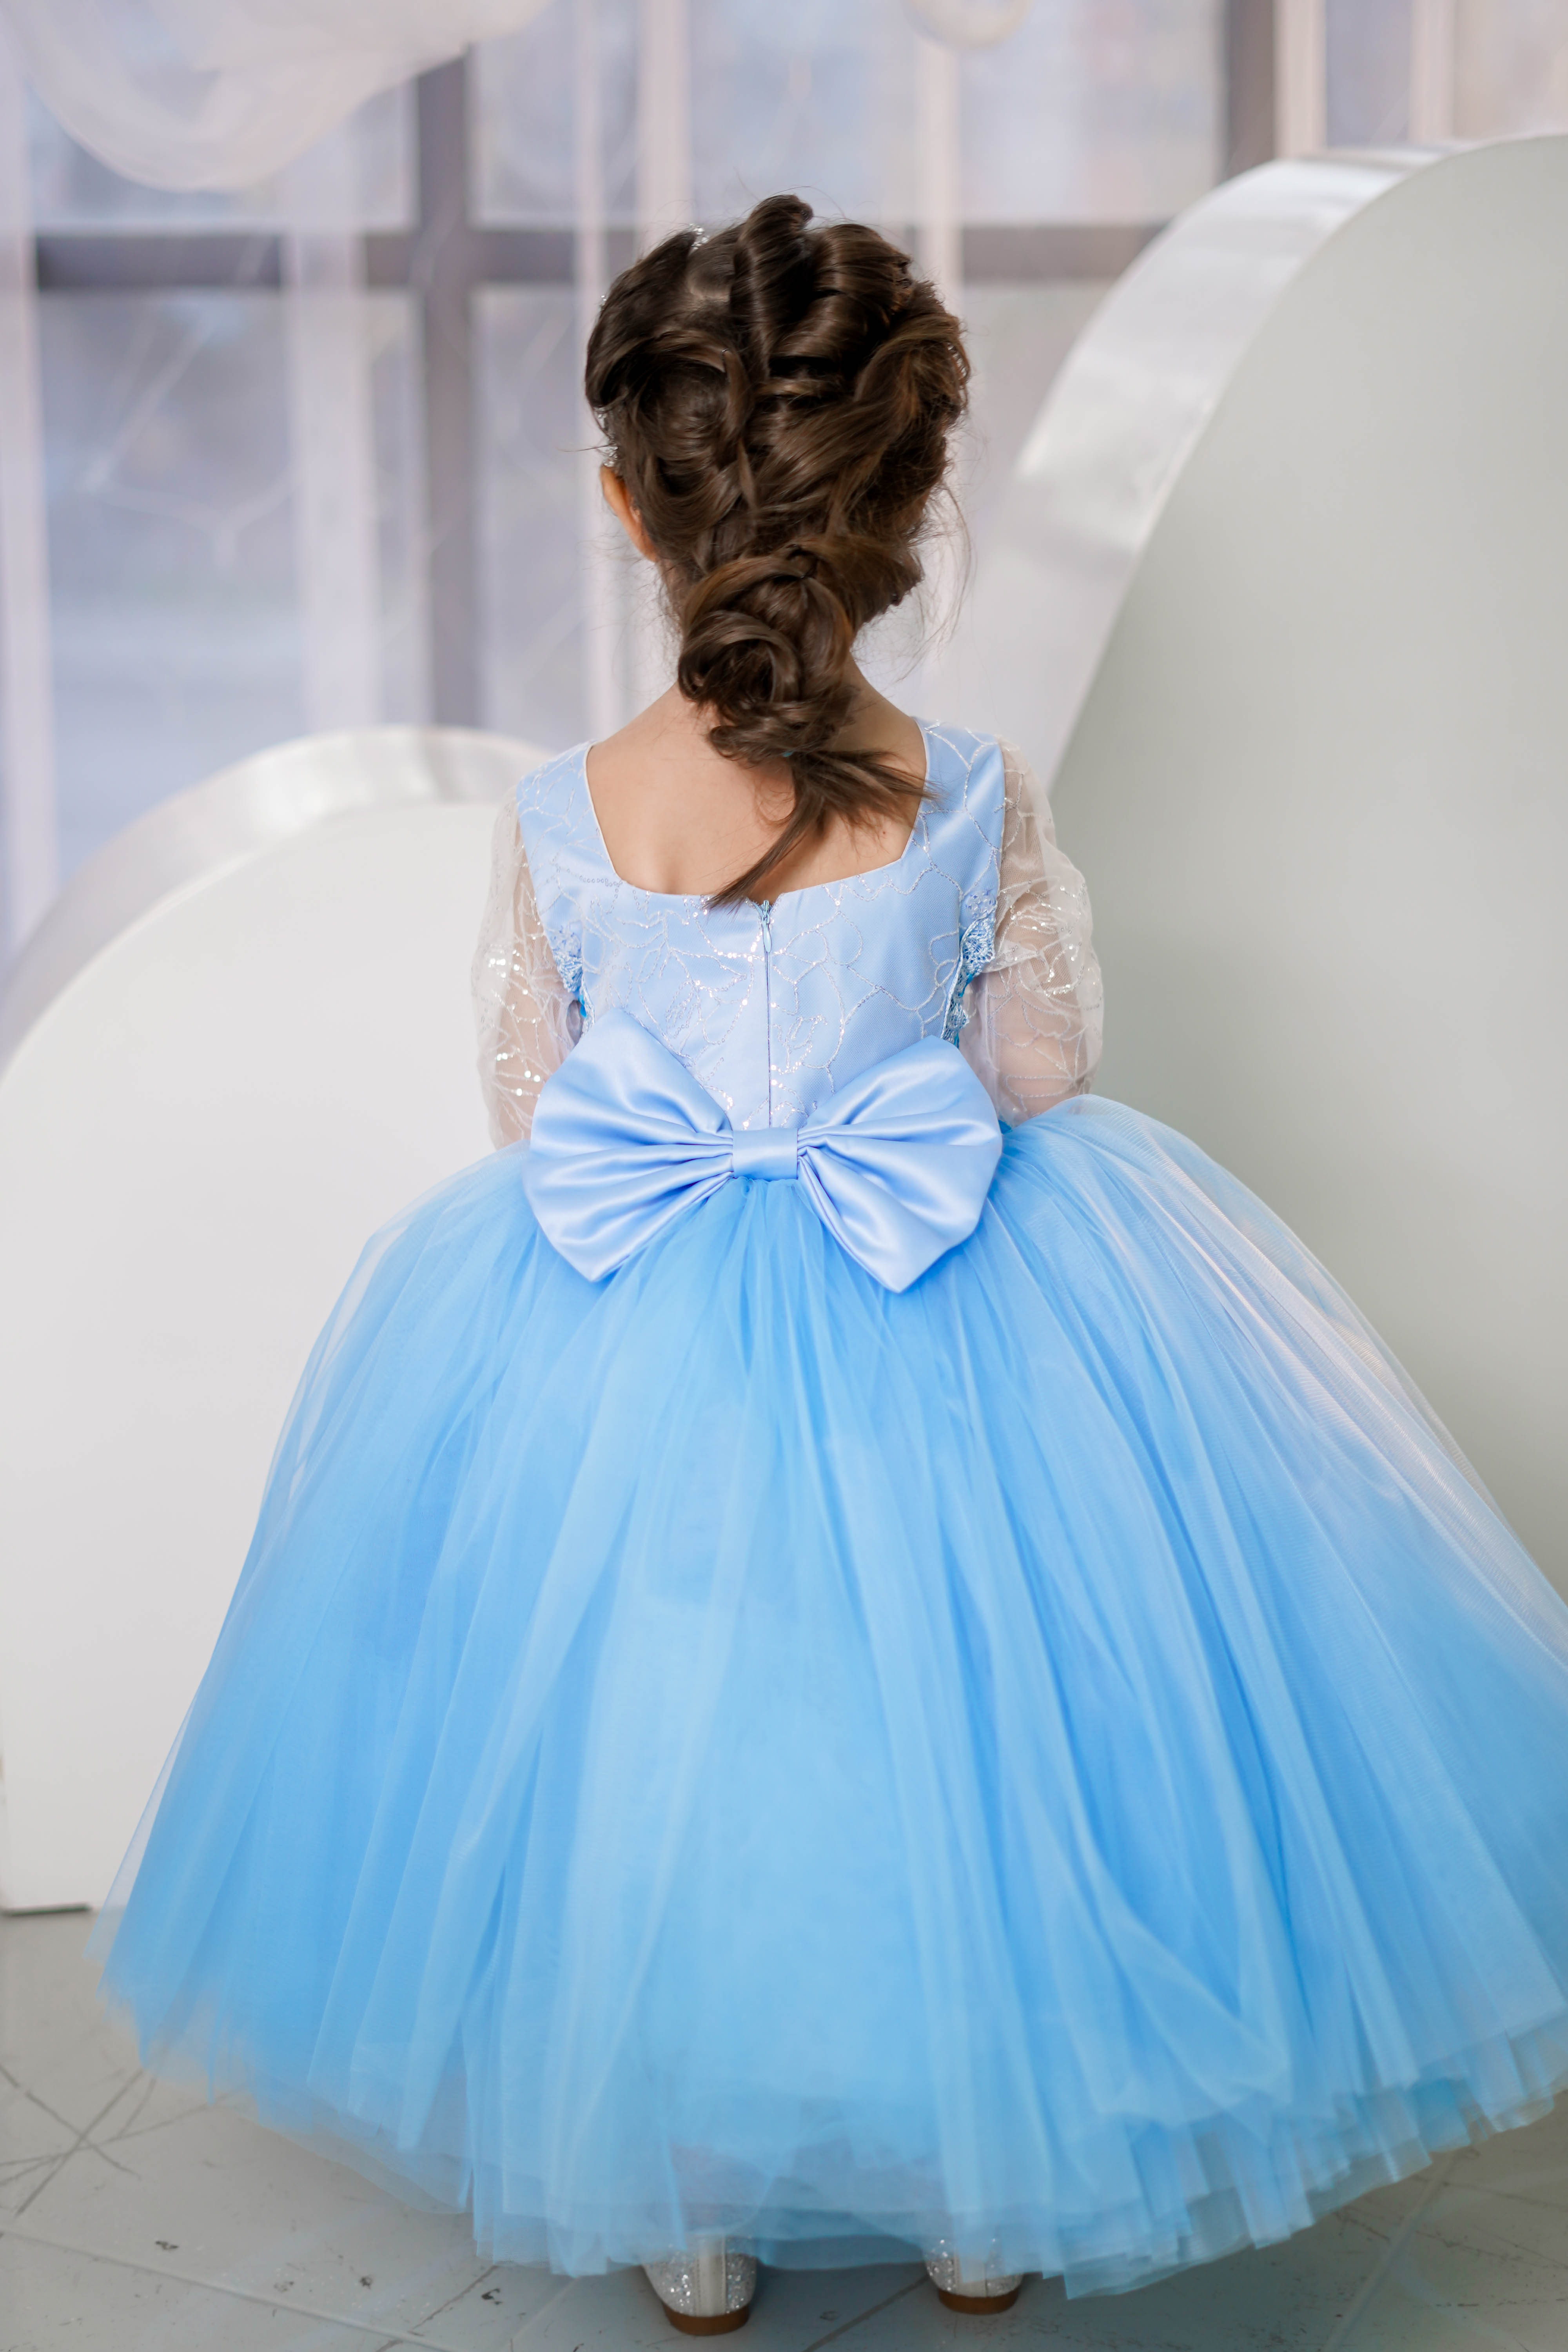 Buy Elsa Inspired Dress, Frozen Inspired Girl Dress, Frozen Costume, Girl  Frozen Tutu Dress, Birthday Ball Gown, Toddler Girl Birthday Dress Online  in India - Etsy